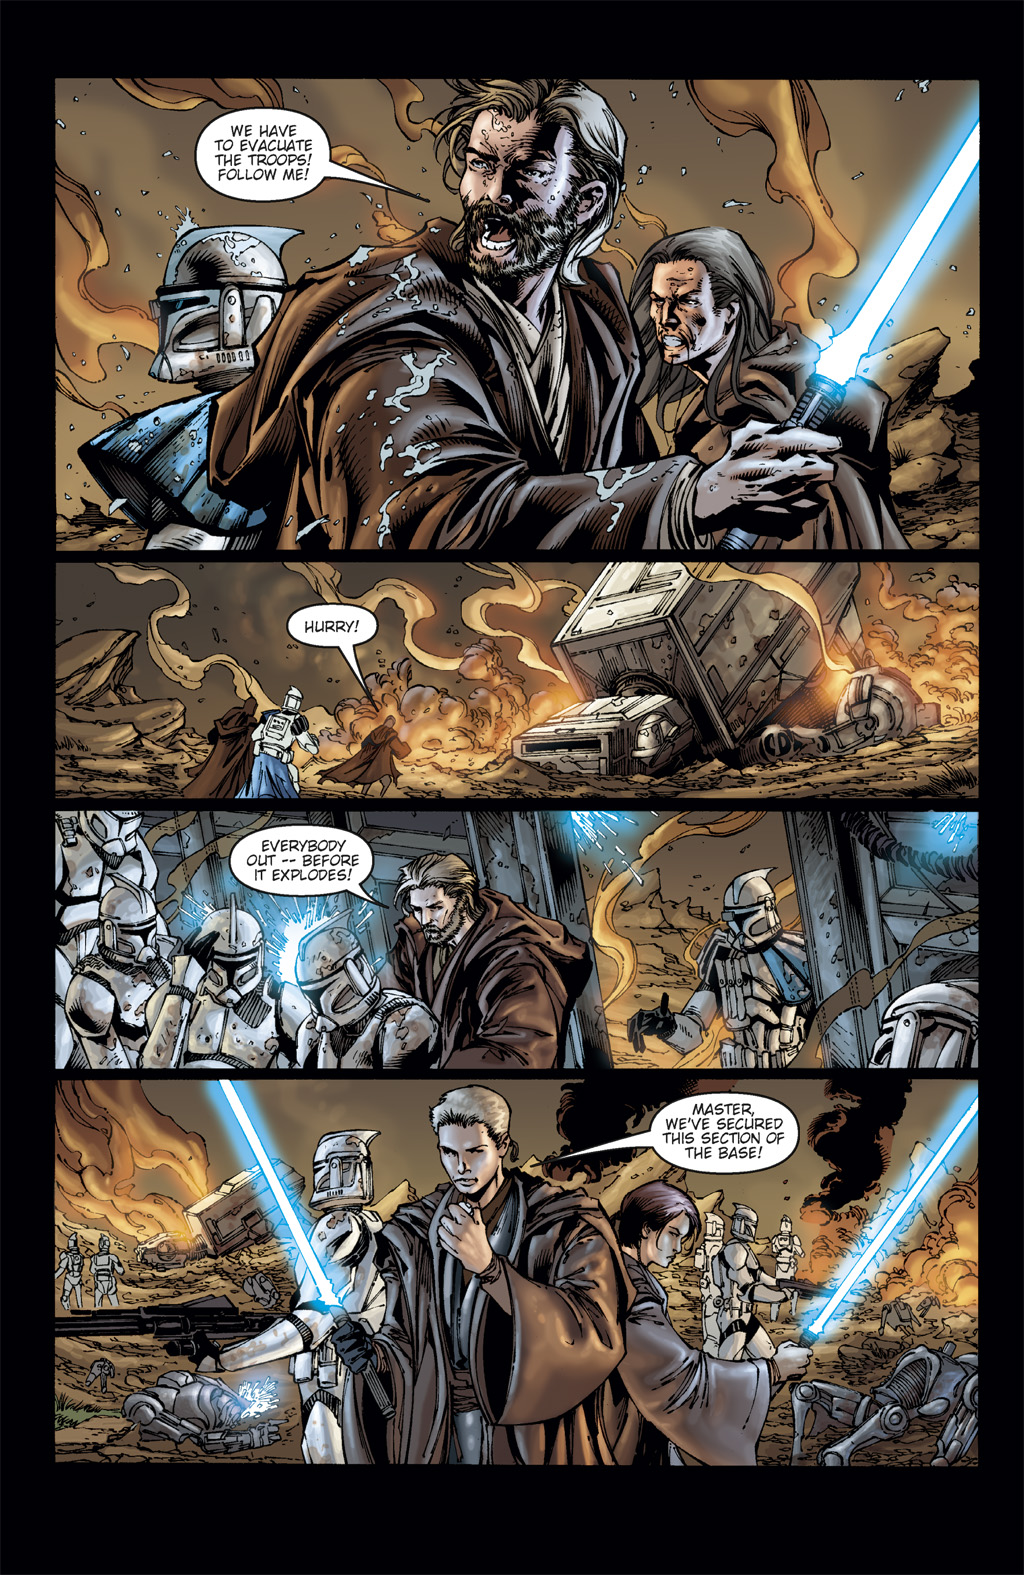 Read online Star Wars: Clone Wars comic -  Issue # TPB 3 - 26